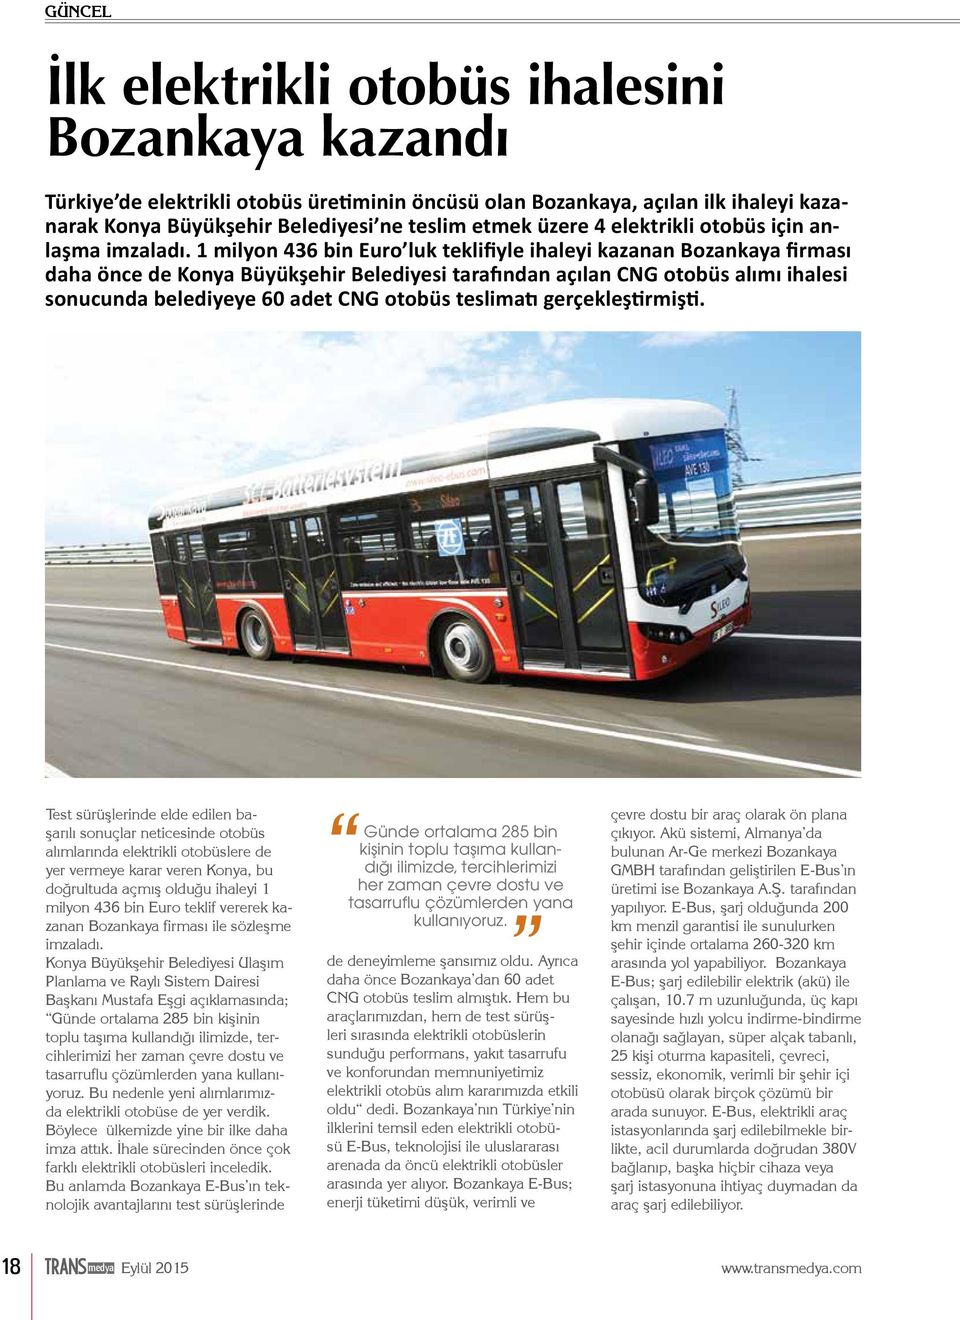 1 milyon 436 bin Euro luk teklifiyle ihaleyi kazanan Bozankaya firması daha önce de Konya Büyükşehir Belediyesi tarafından açılan CNG otobüs alımı ihalesi sonucunda belediyeye 60 adet CNG otobüs